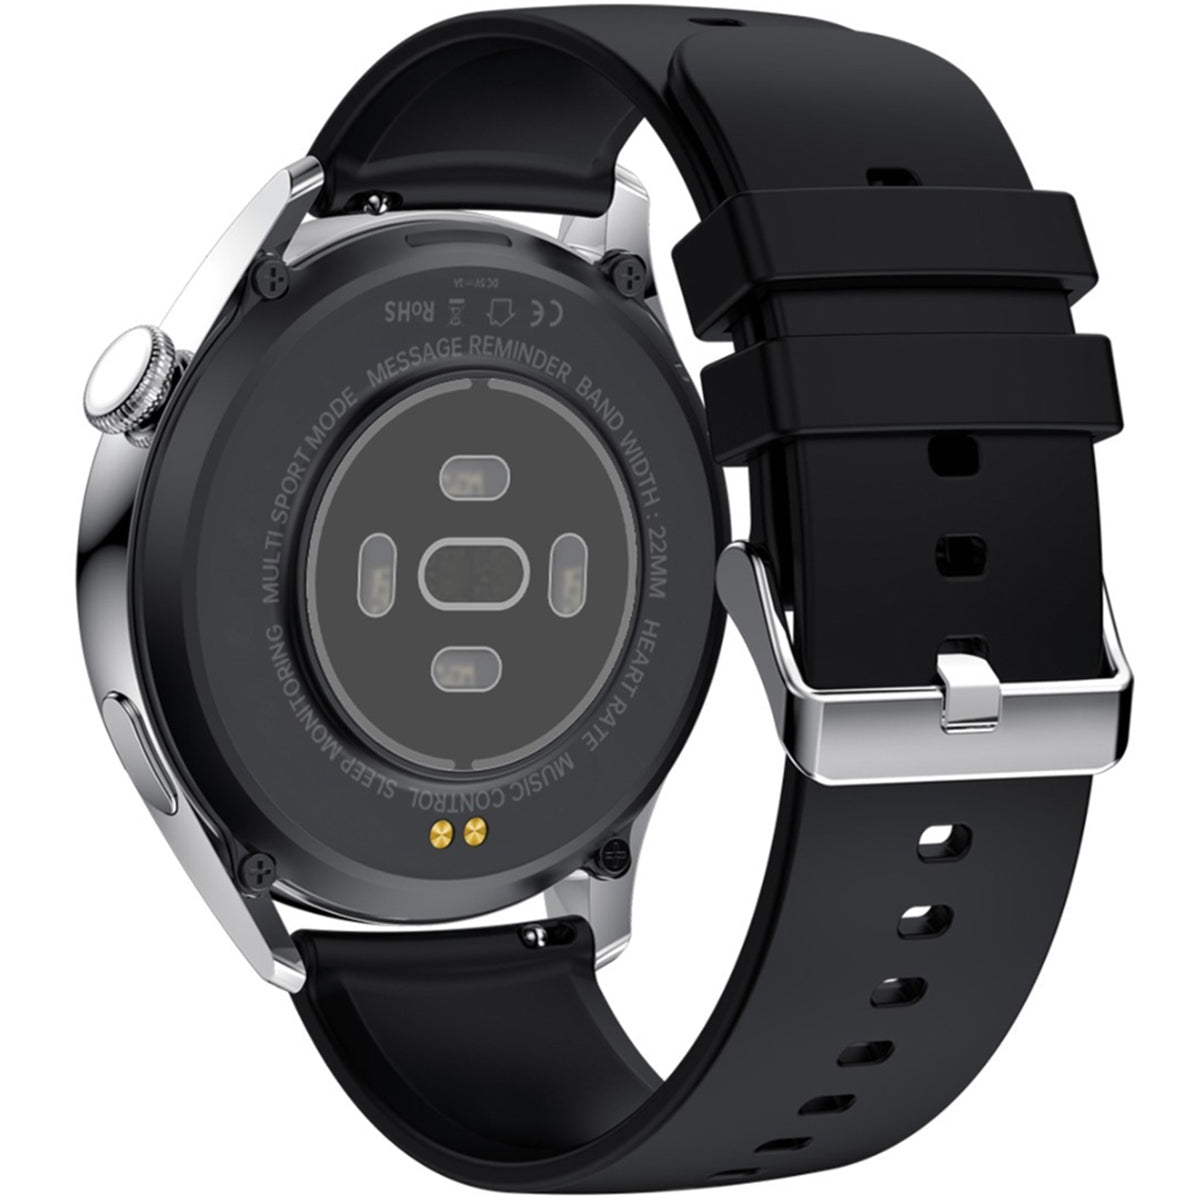 Fralugio Smart Watch Reloj Inteligente Gt5 Full Touch Nfc Hd